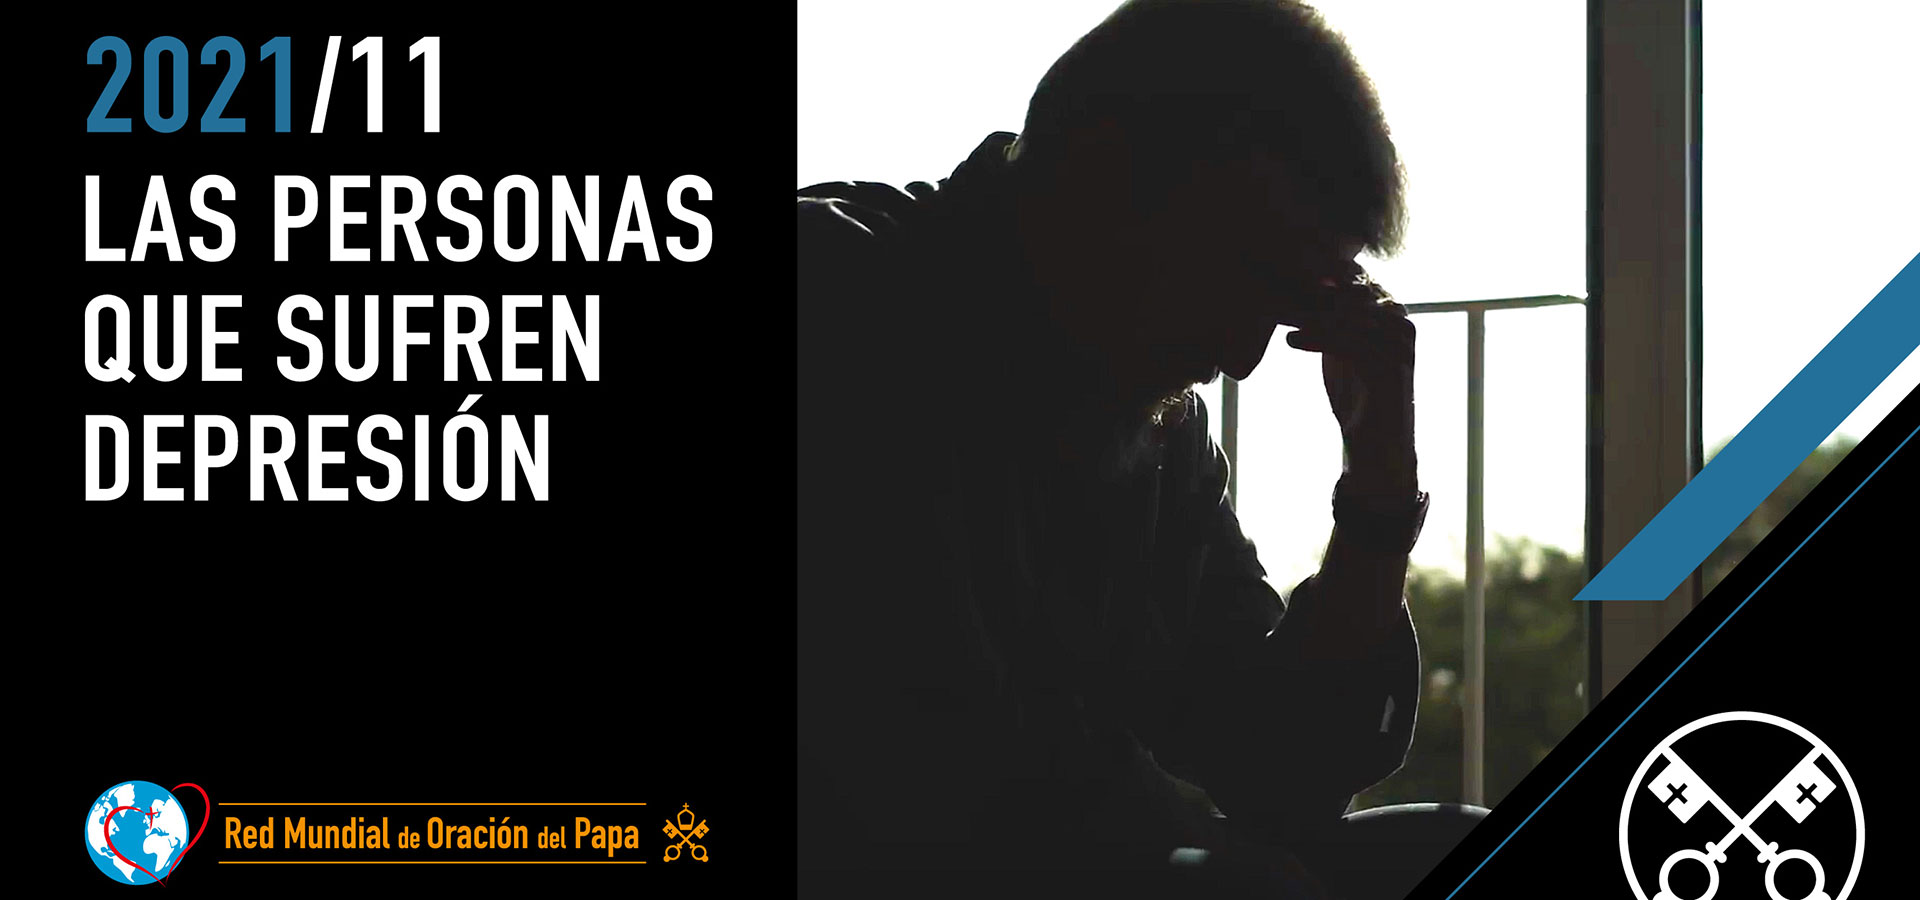 Las personas que sufren depresión – El Video del Papa